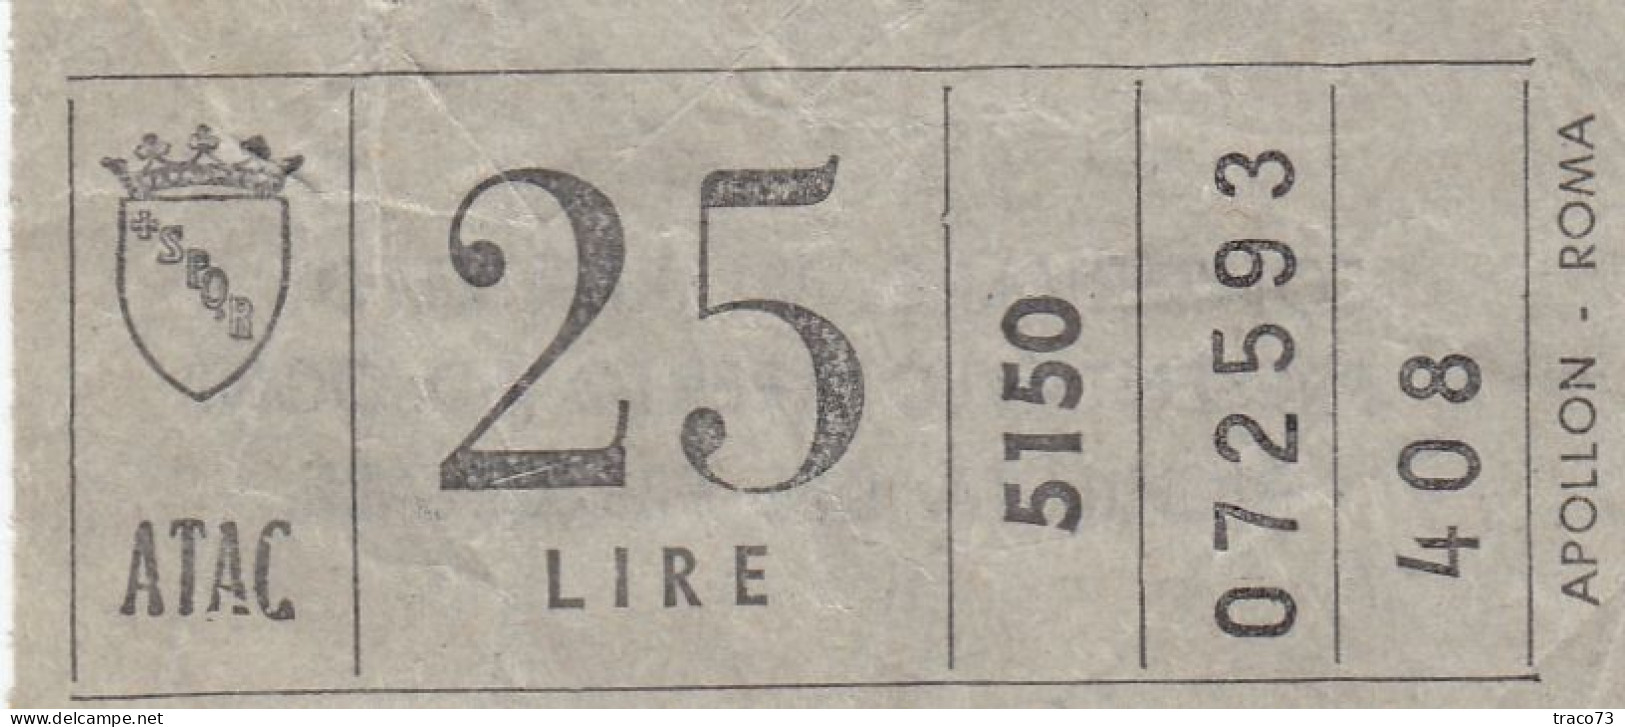 ATAC - ROMA  _ Anni '50-'60 /  Ticket  _ Biglietto Da Lire 25 - Europe